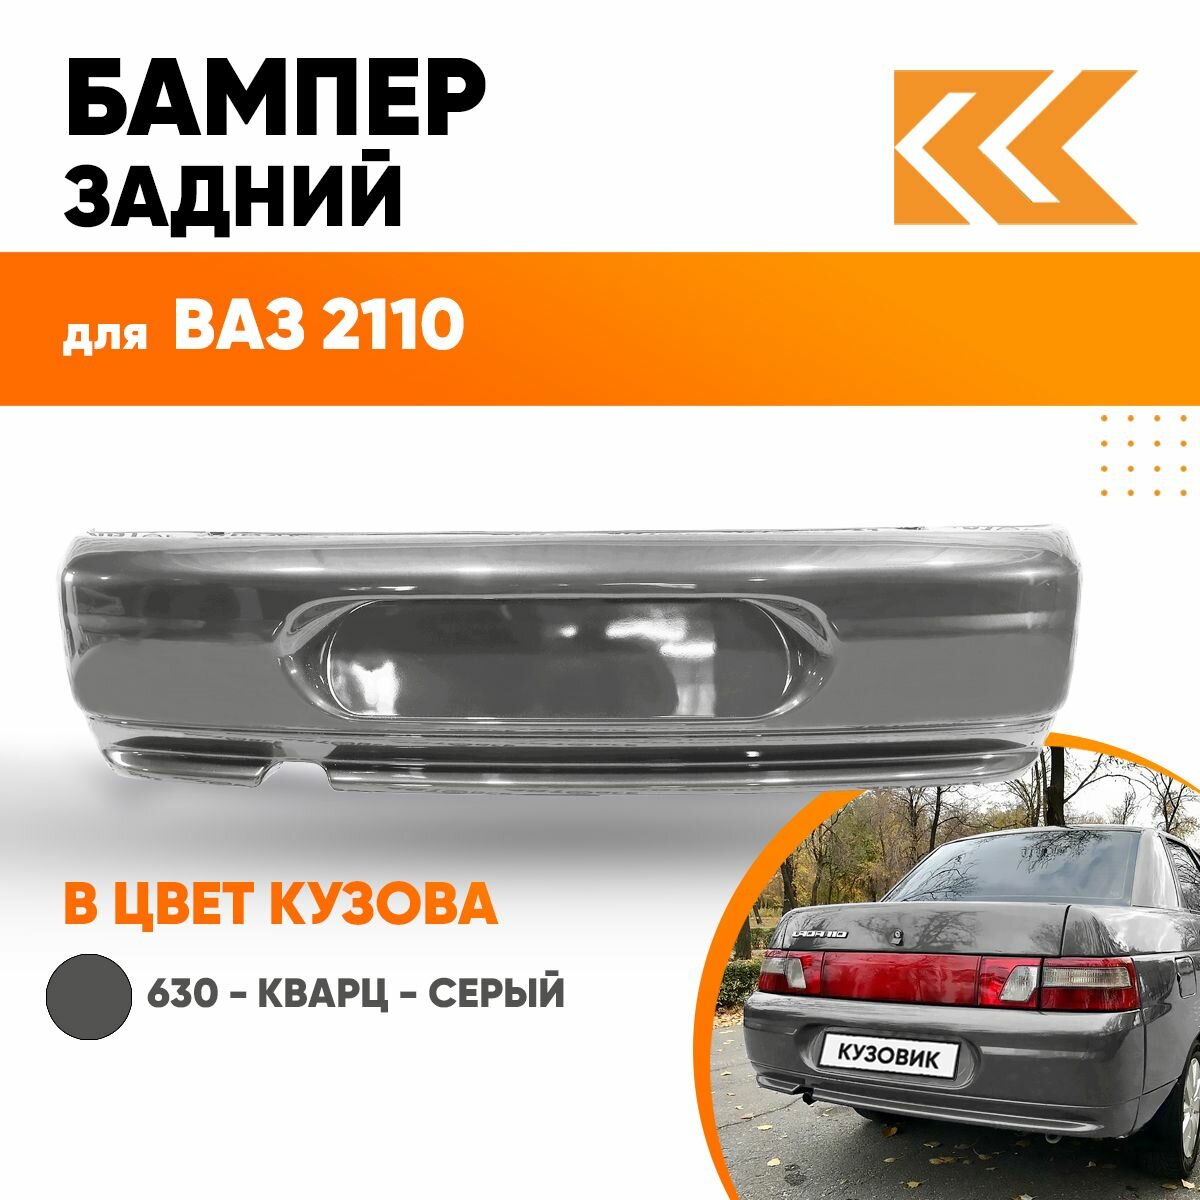 Бампер задний в цвет кузова ВАЗ 2110 606 - Млечный путь - Черный